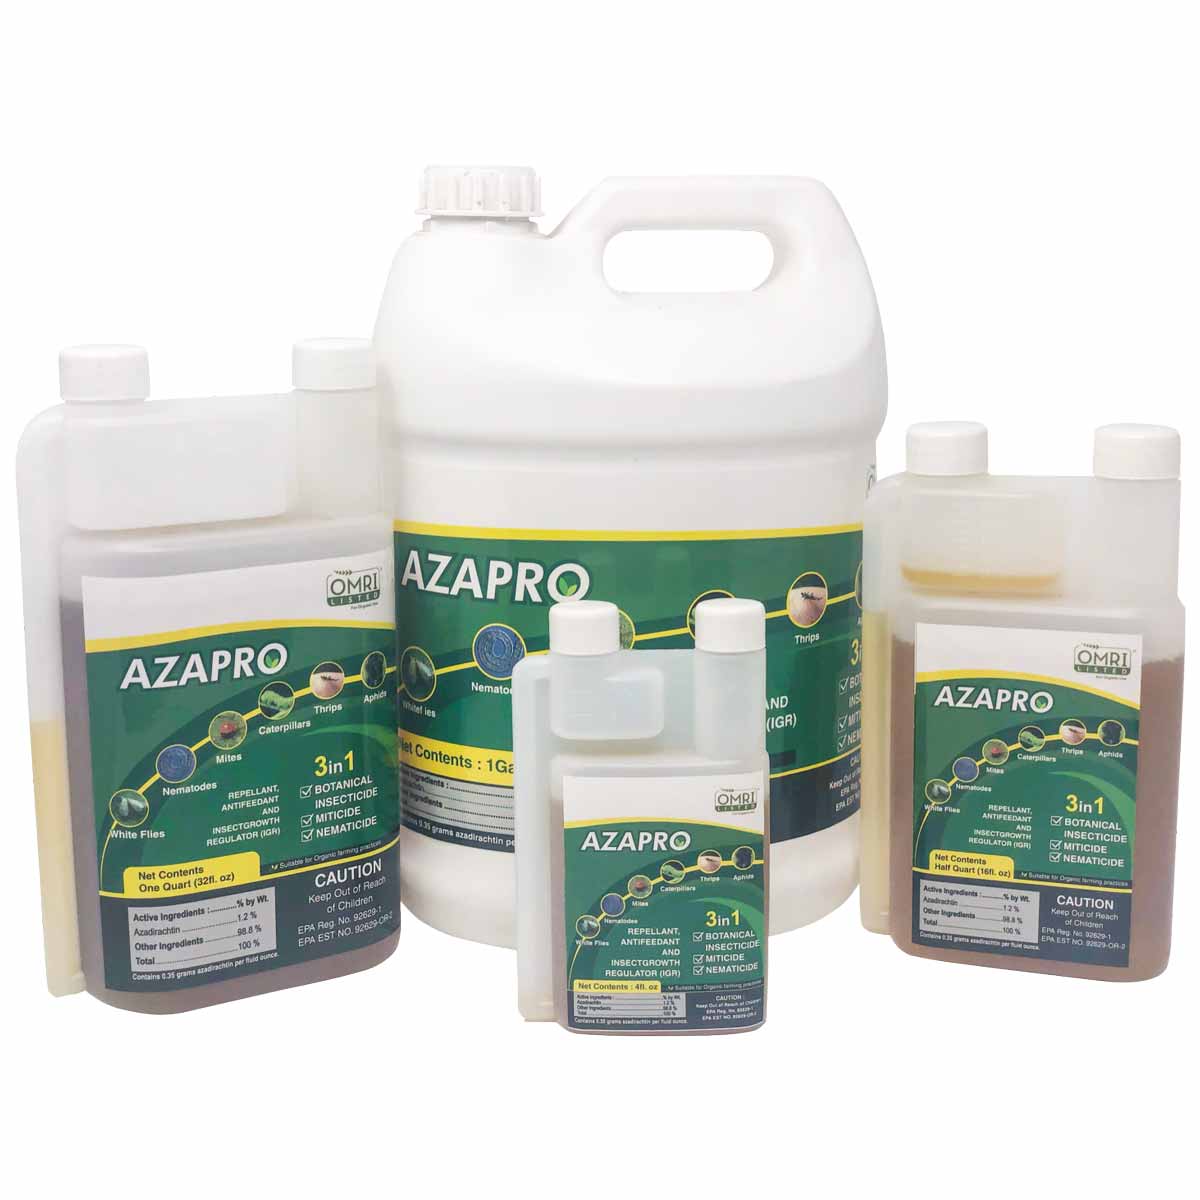 Azapro Product Group